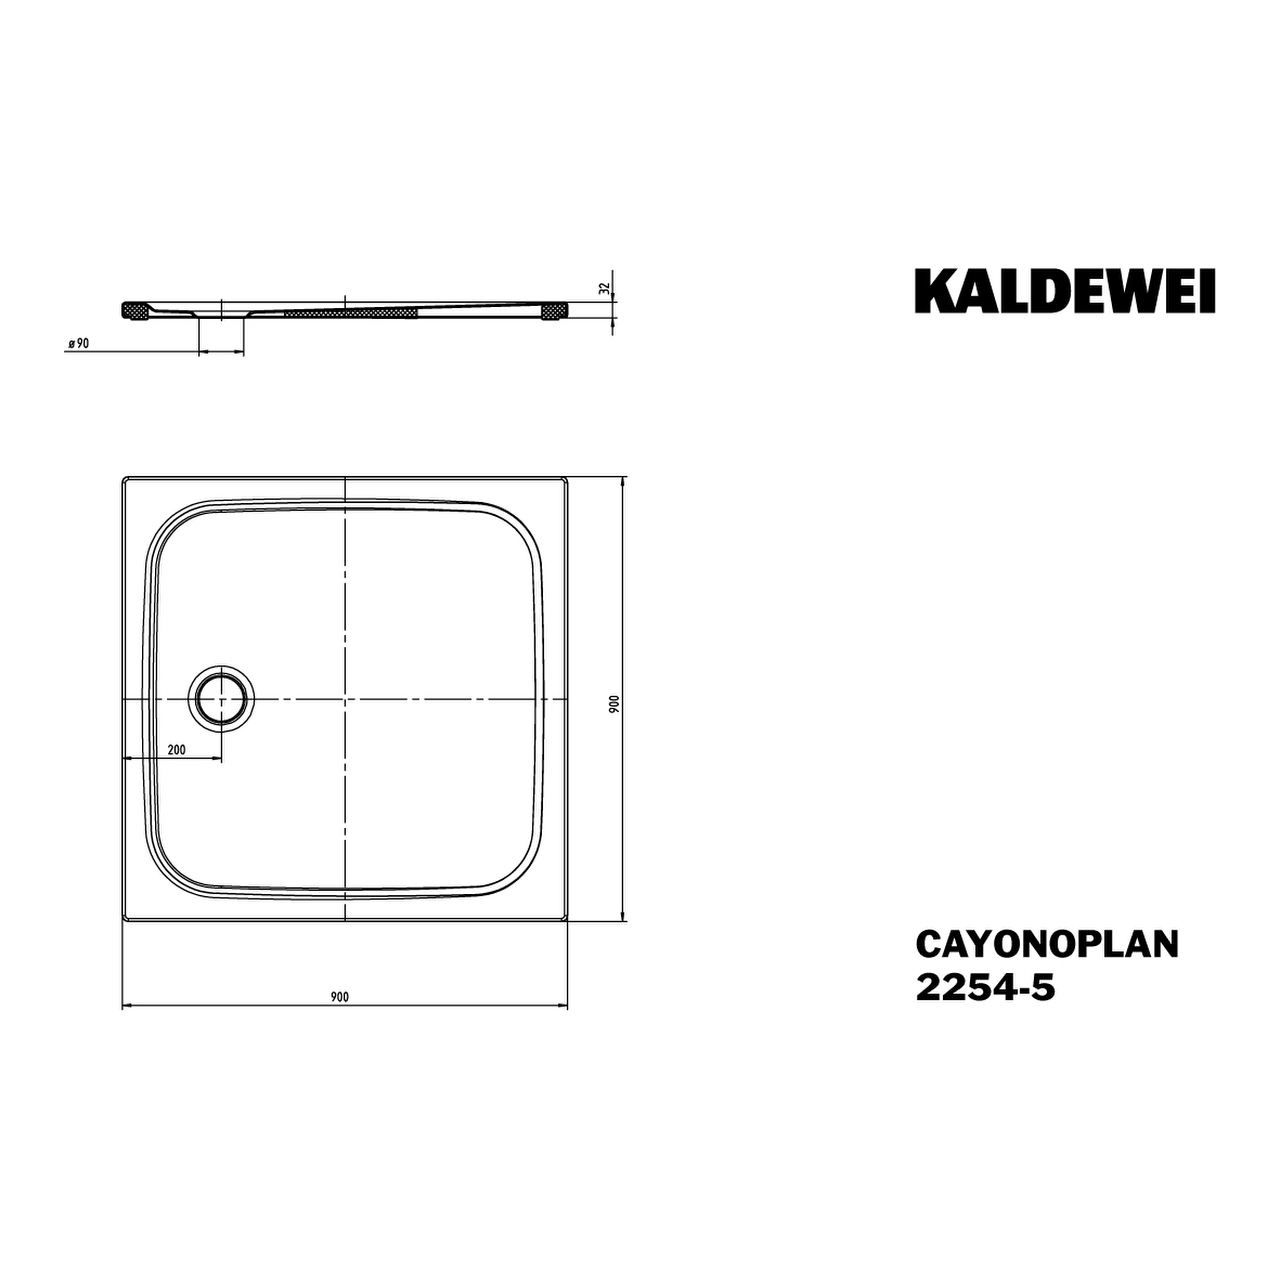 Kaldewei quadrat Duschwanne „Cayonoplan“ 90 × 90 cm in warm beige 40